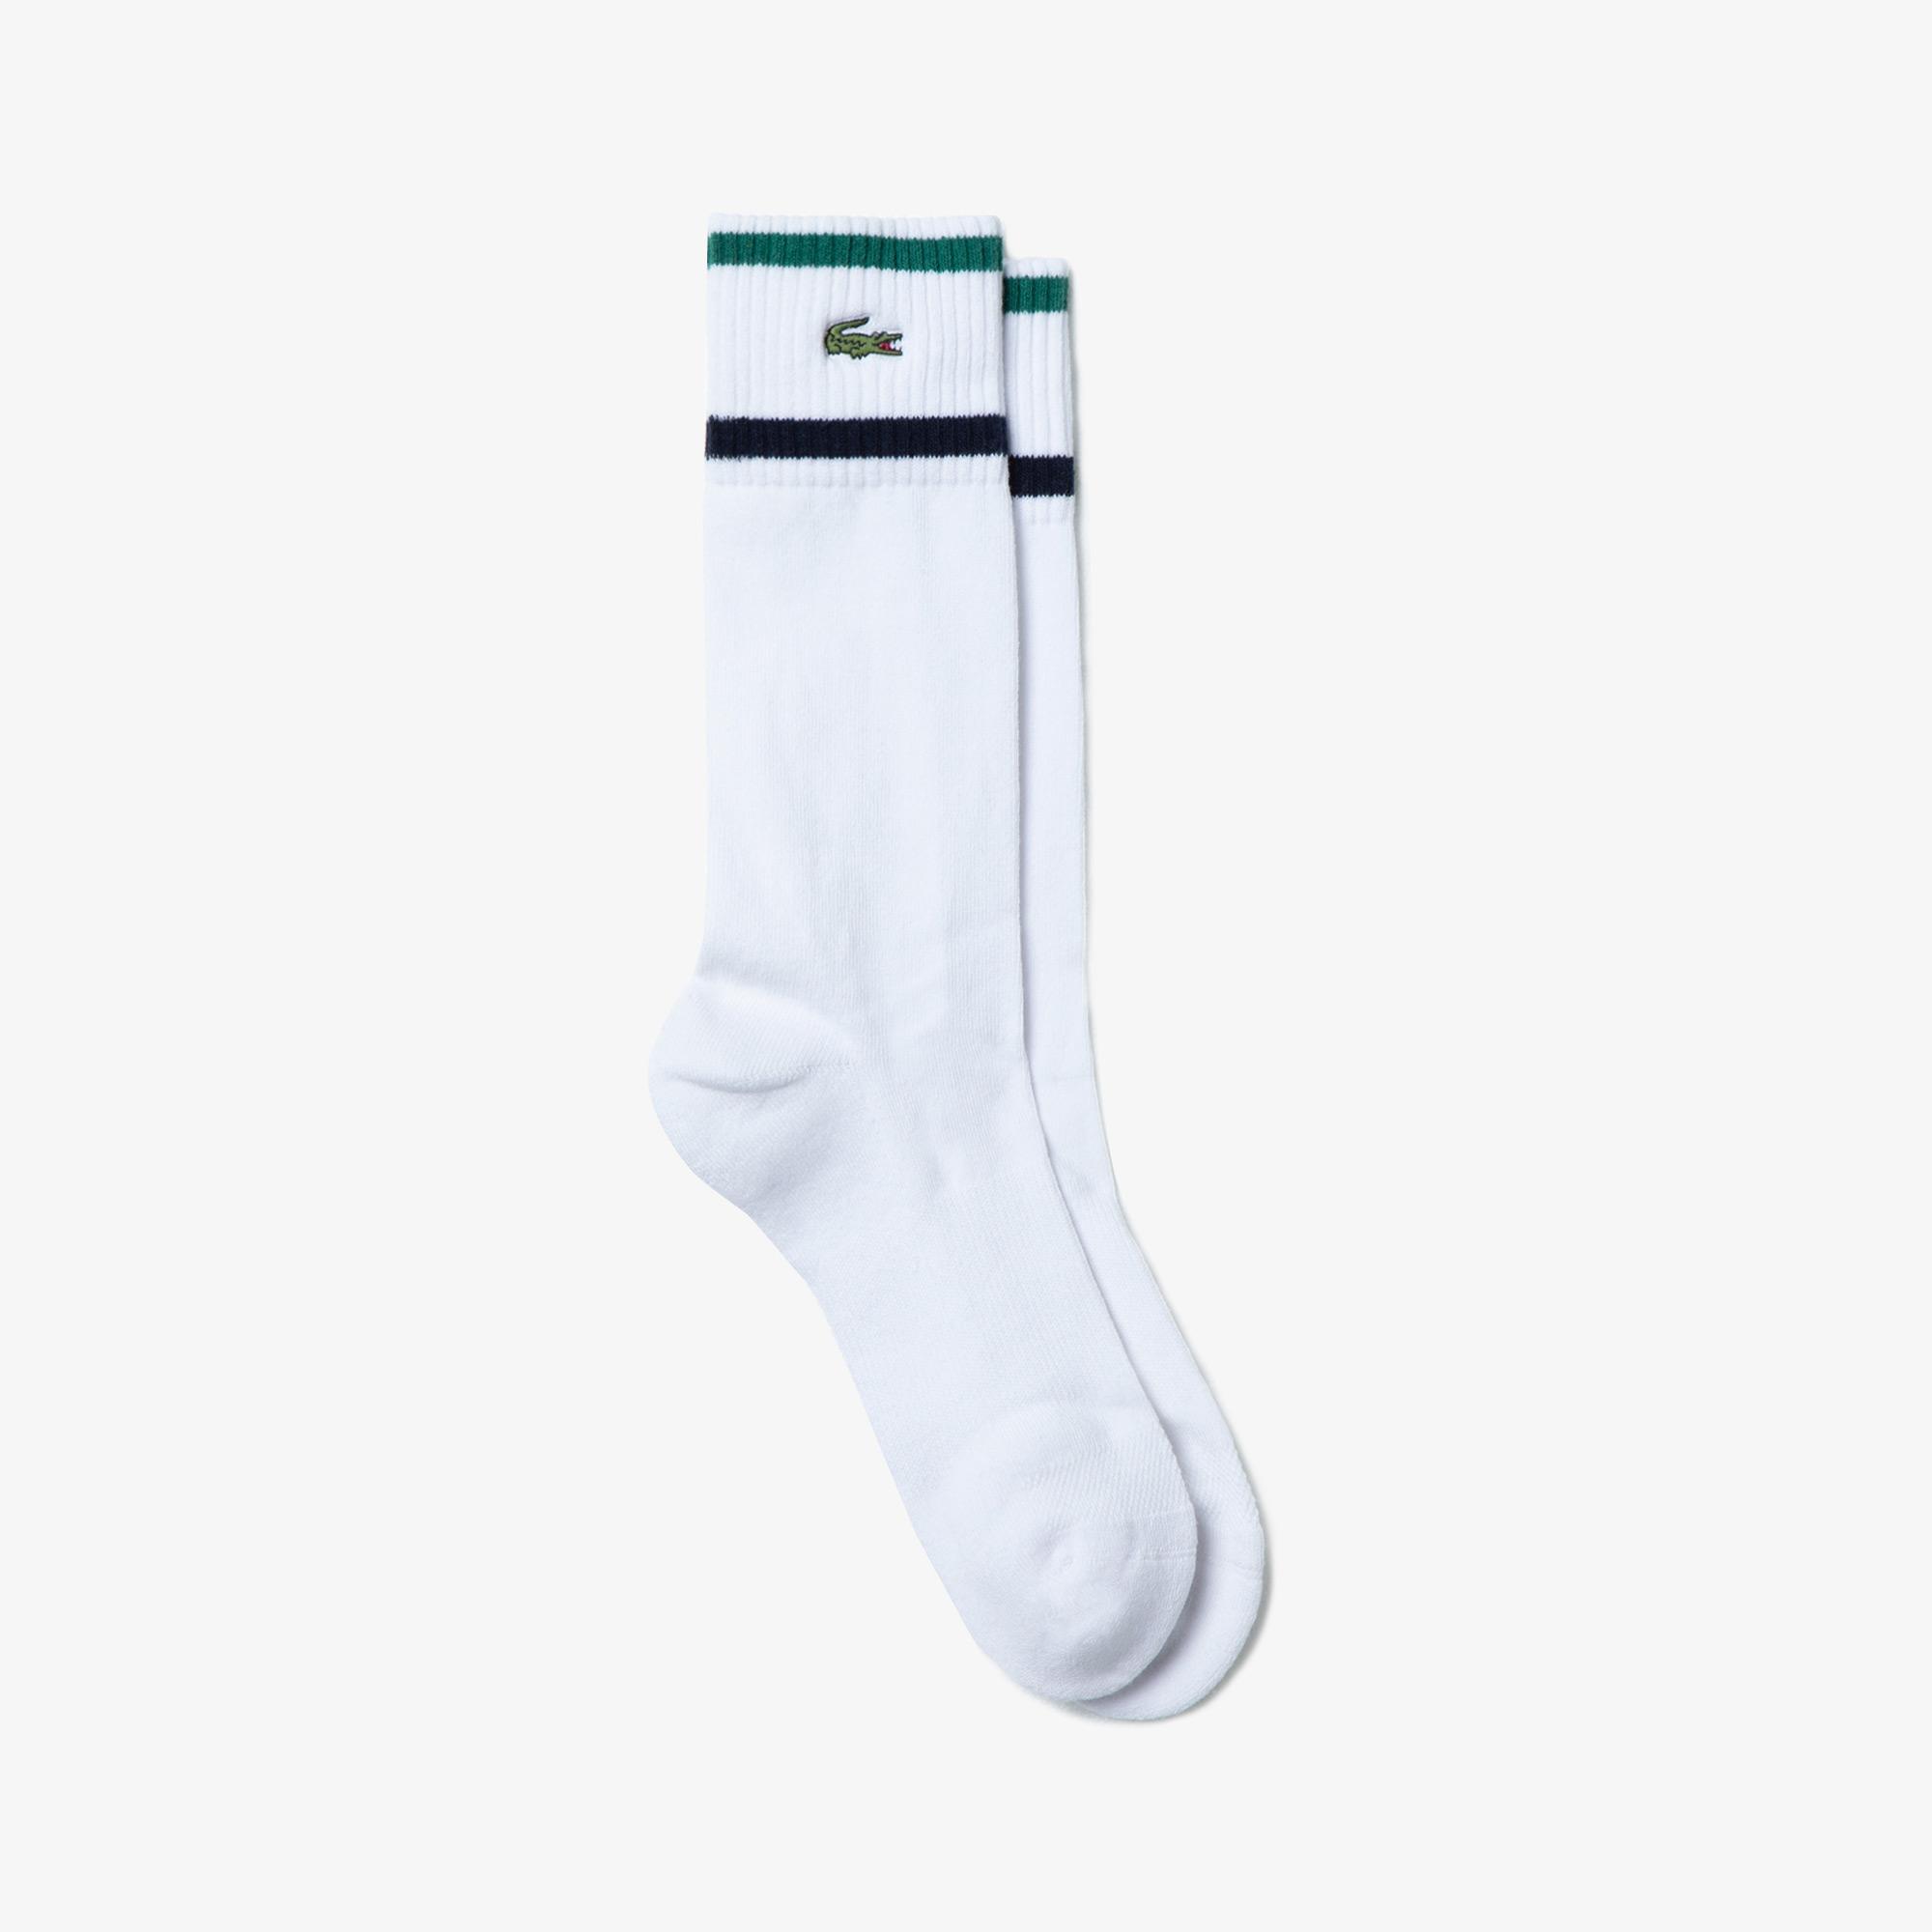 Lacoste Sport Roland Garros Unisex Uzun Beyaz Çorap. 2